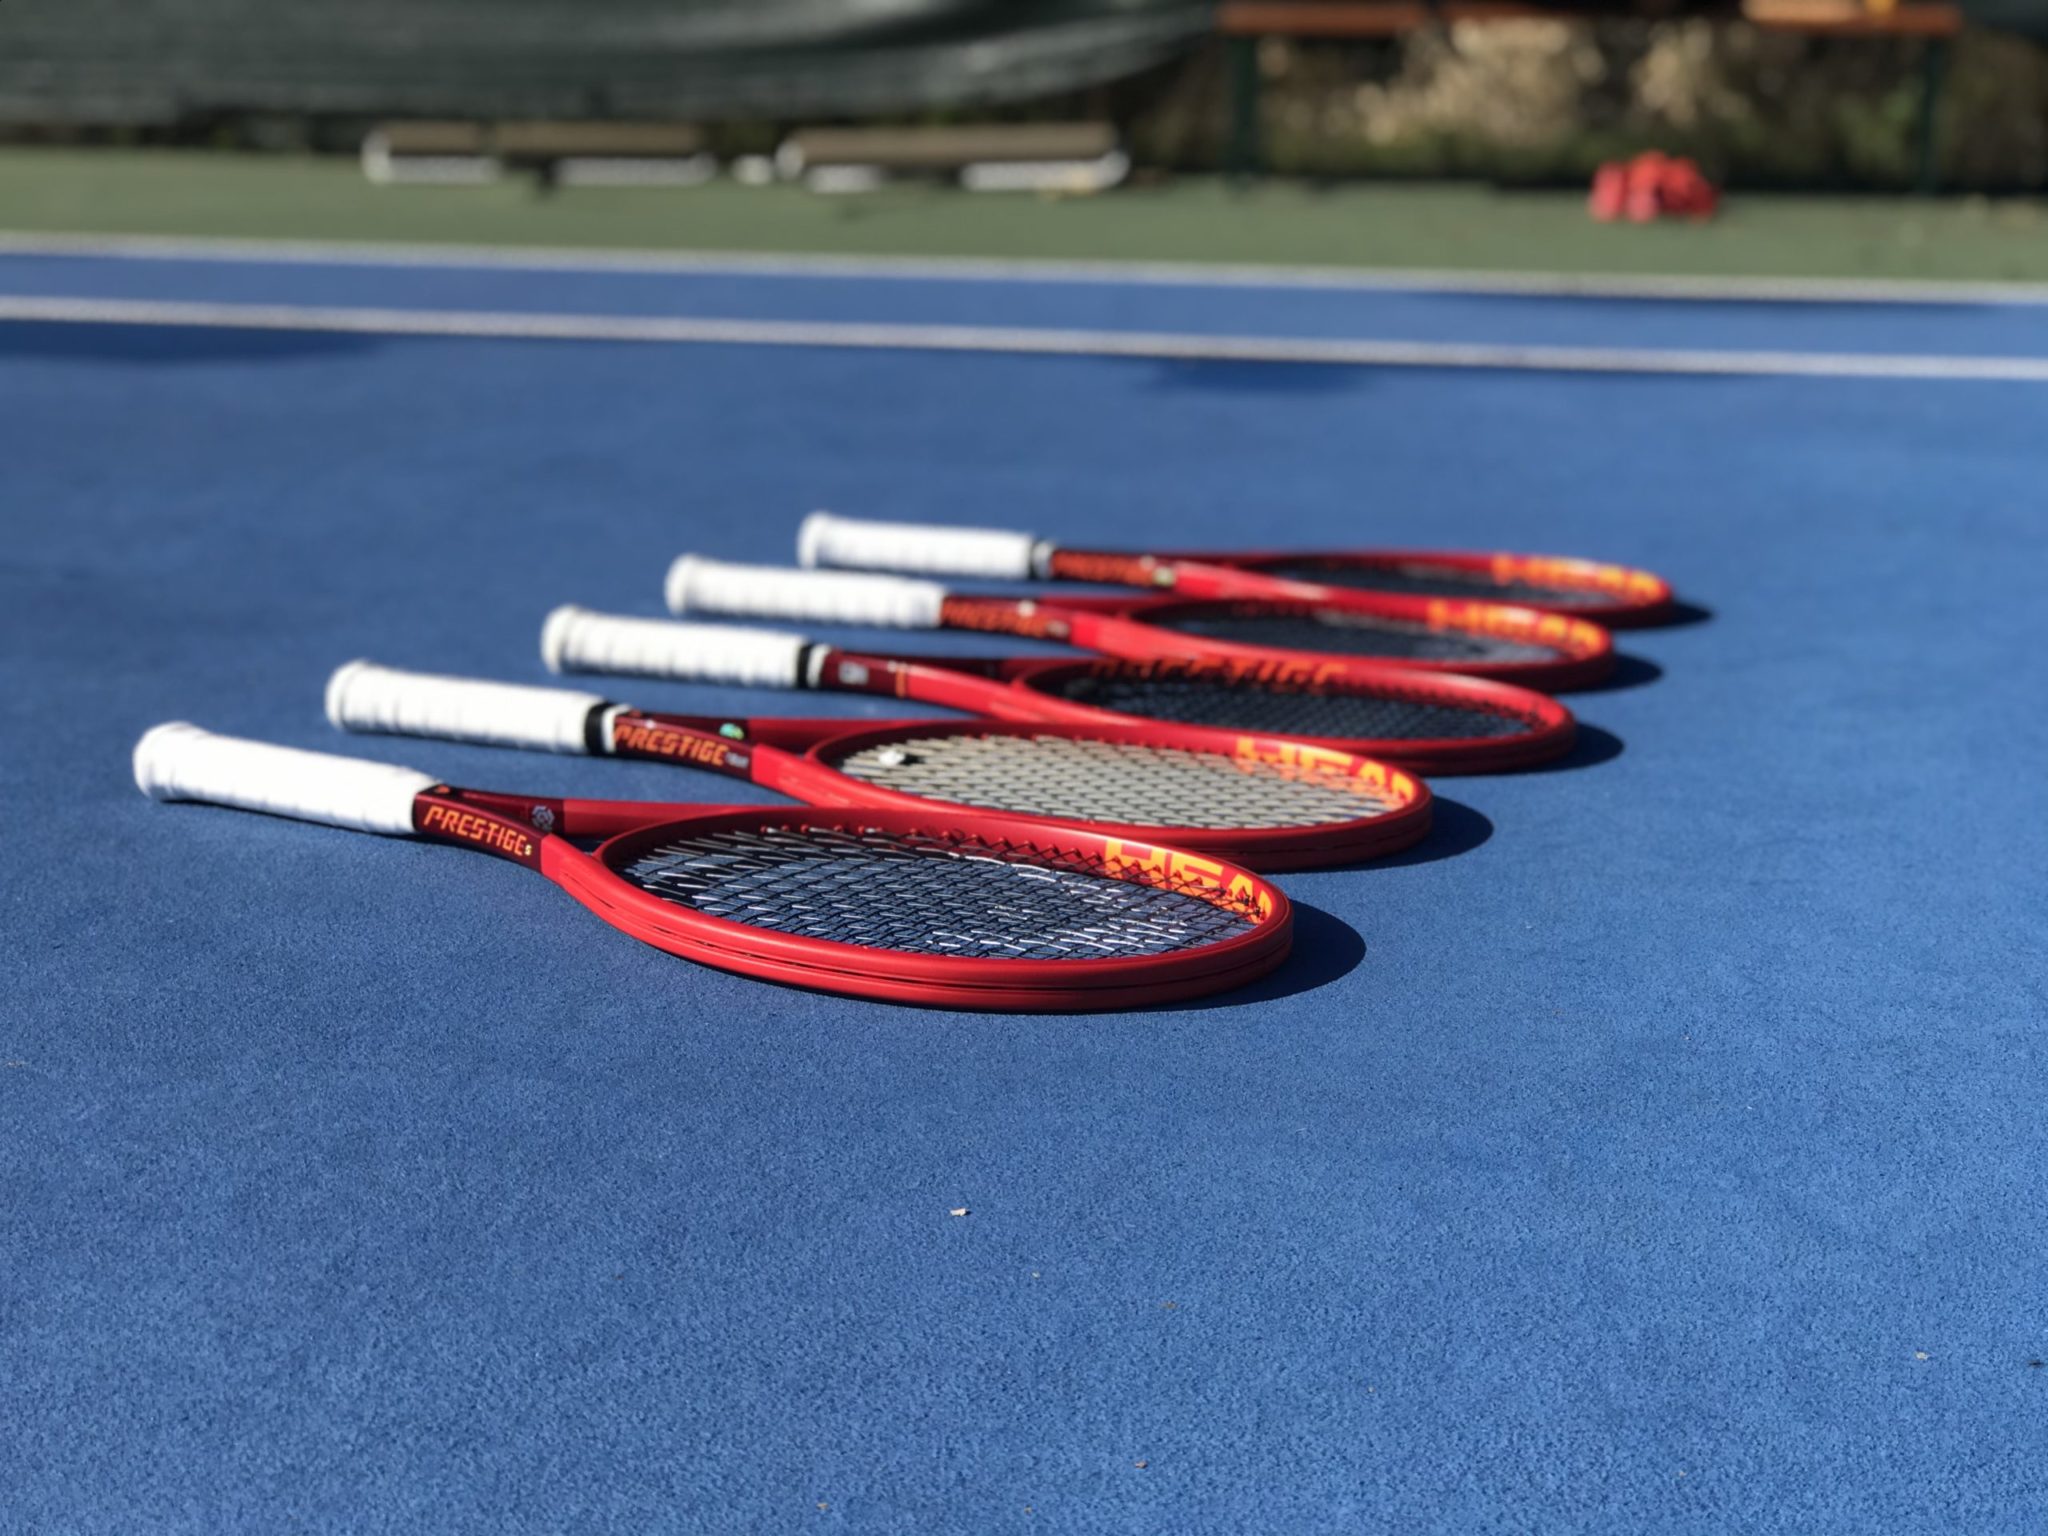 HEAD Tennis Racquets - Tennisnerd.net - The different HEAD racquet